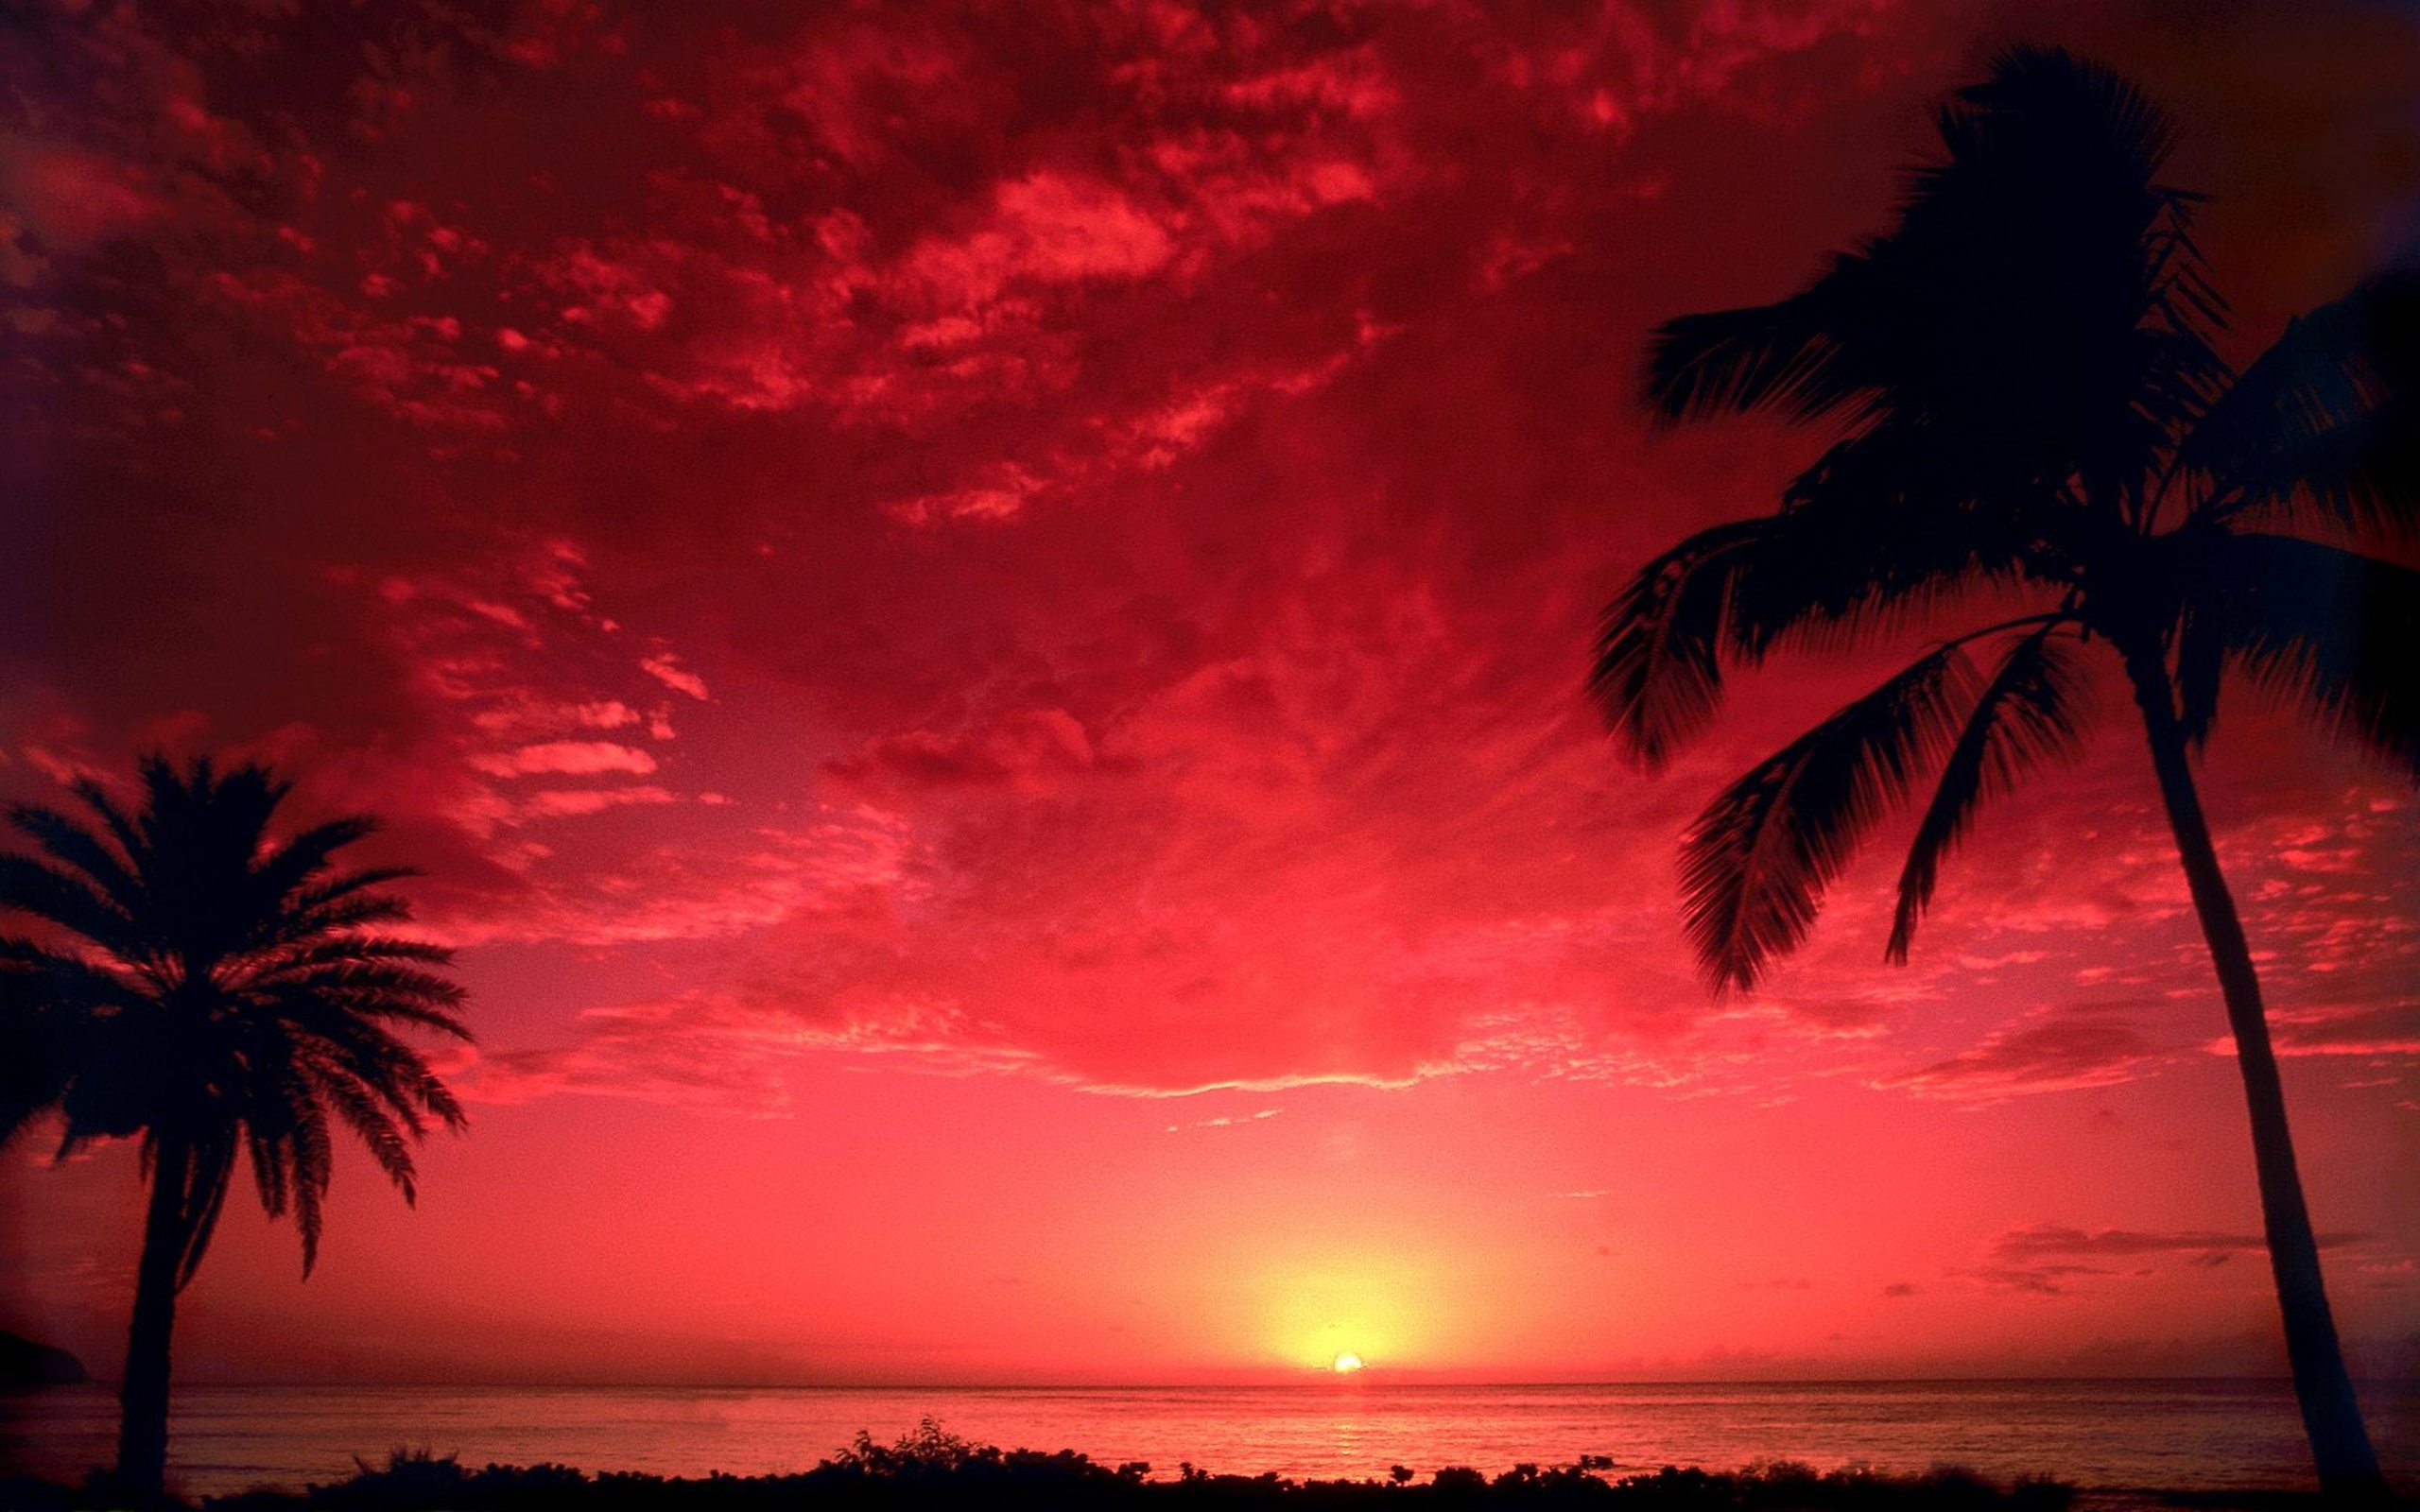 Southern sun paul. Красный закат. Пальмы на закате. Красивый закат на море. Красная Пальма.